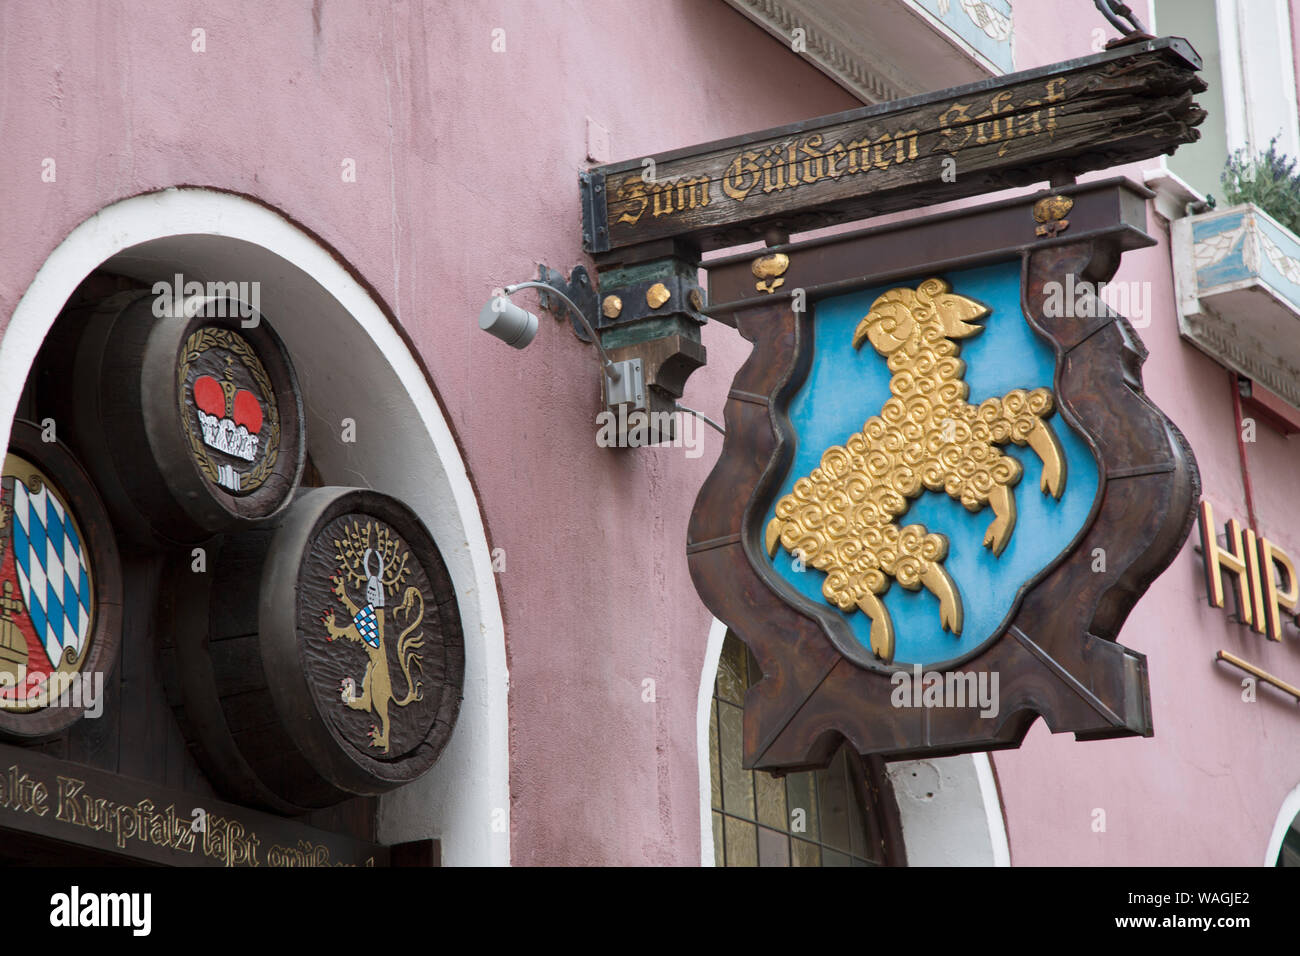 Zum Guldenen das Restaurant Zeichen, Heidelberg, Deutschland Stockfoto